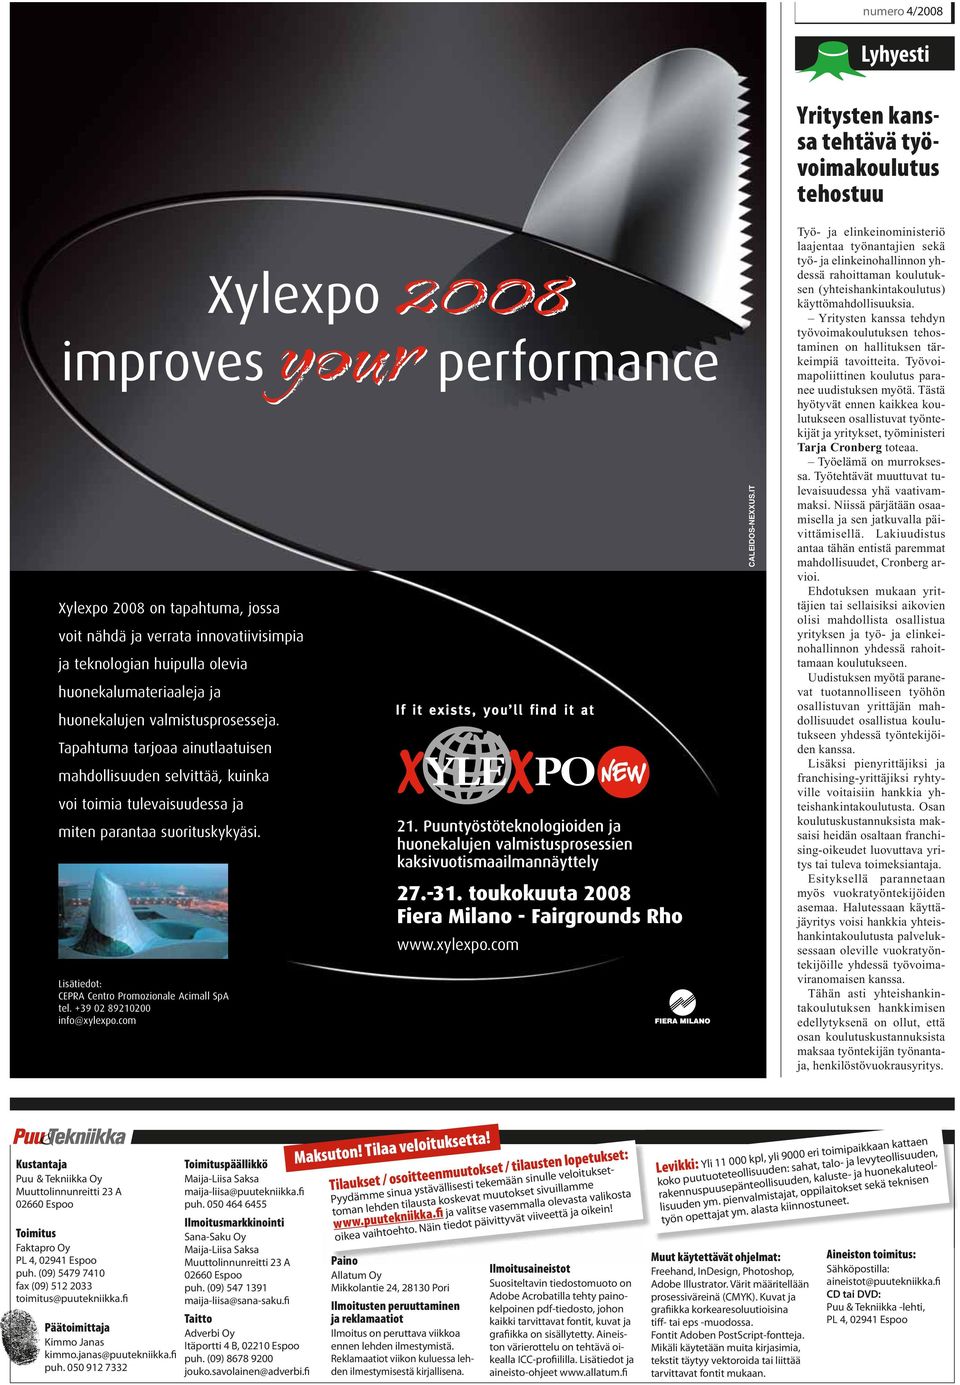 +39 02 89210200 info@xylexpo.com your New 2008 Xylexpo 2008 improves your performance 21. Puuntyöstöteknologioiden ja huonekalujen valmistusprosessien kaksivuotismaailmannäyttely 27.-31.